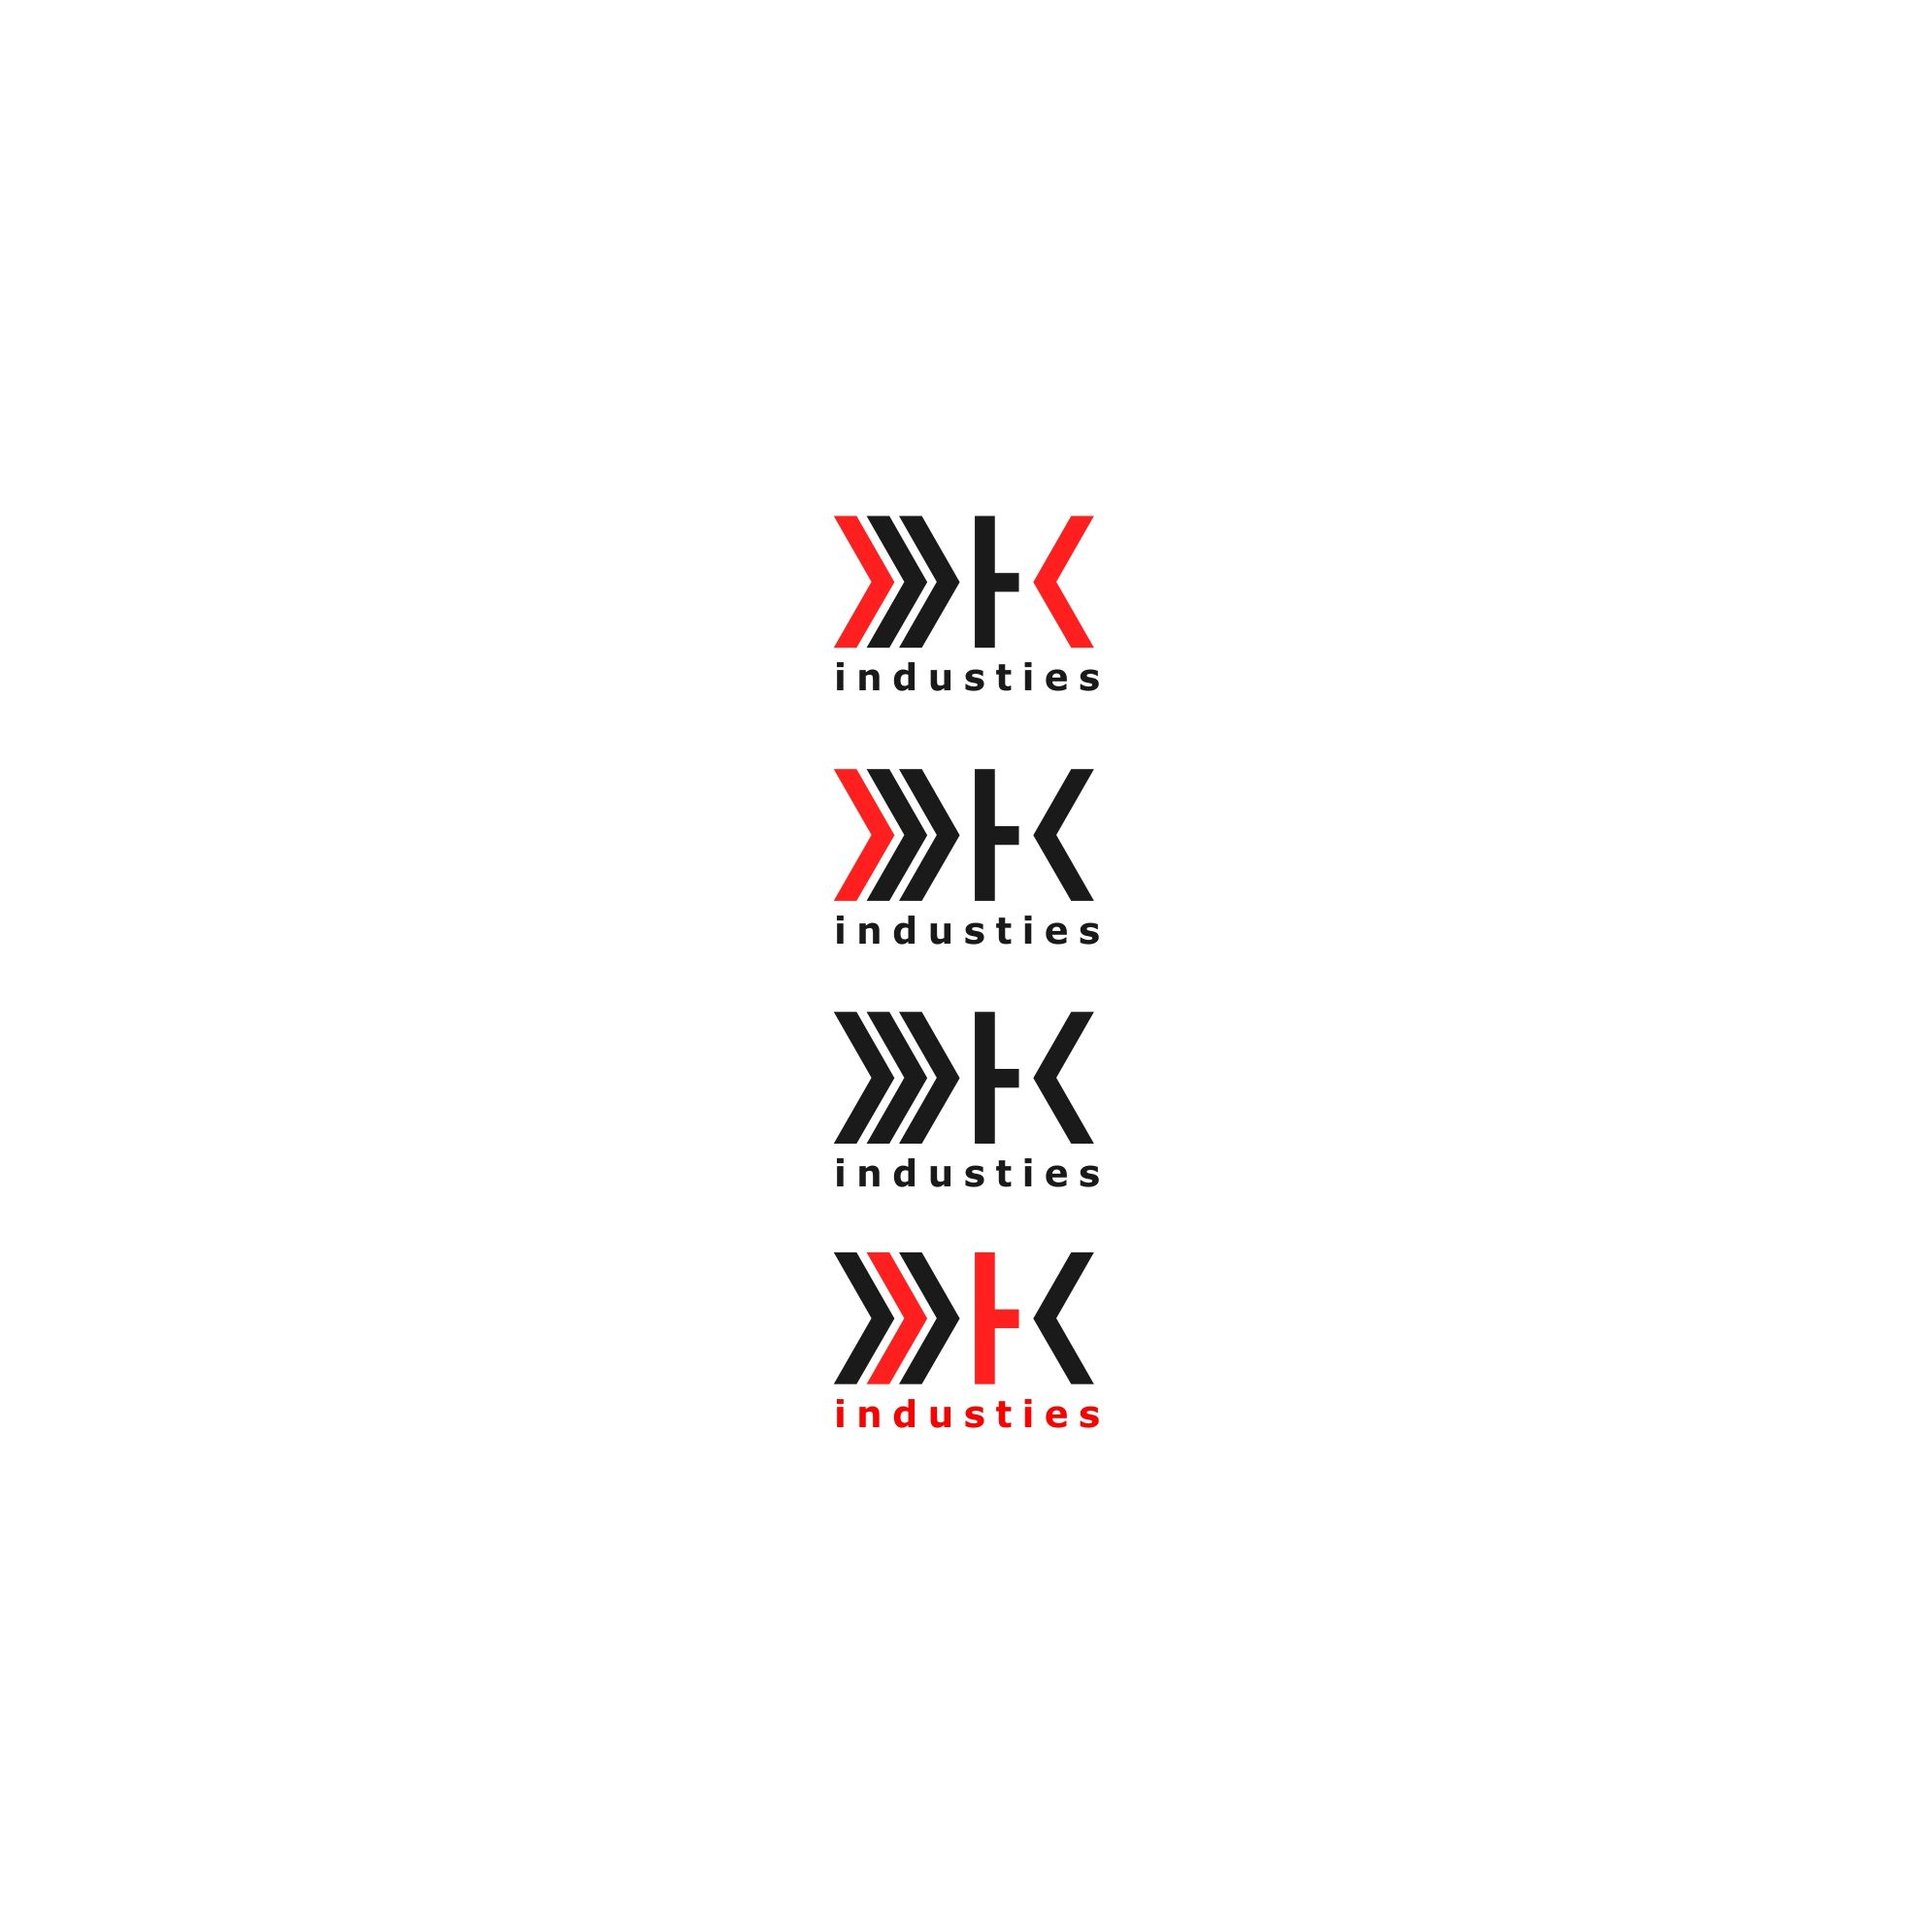 Логотип для DK industies - дизайнер serz4868